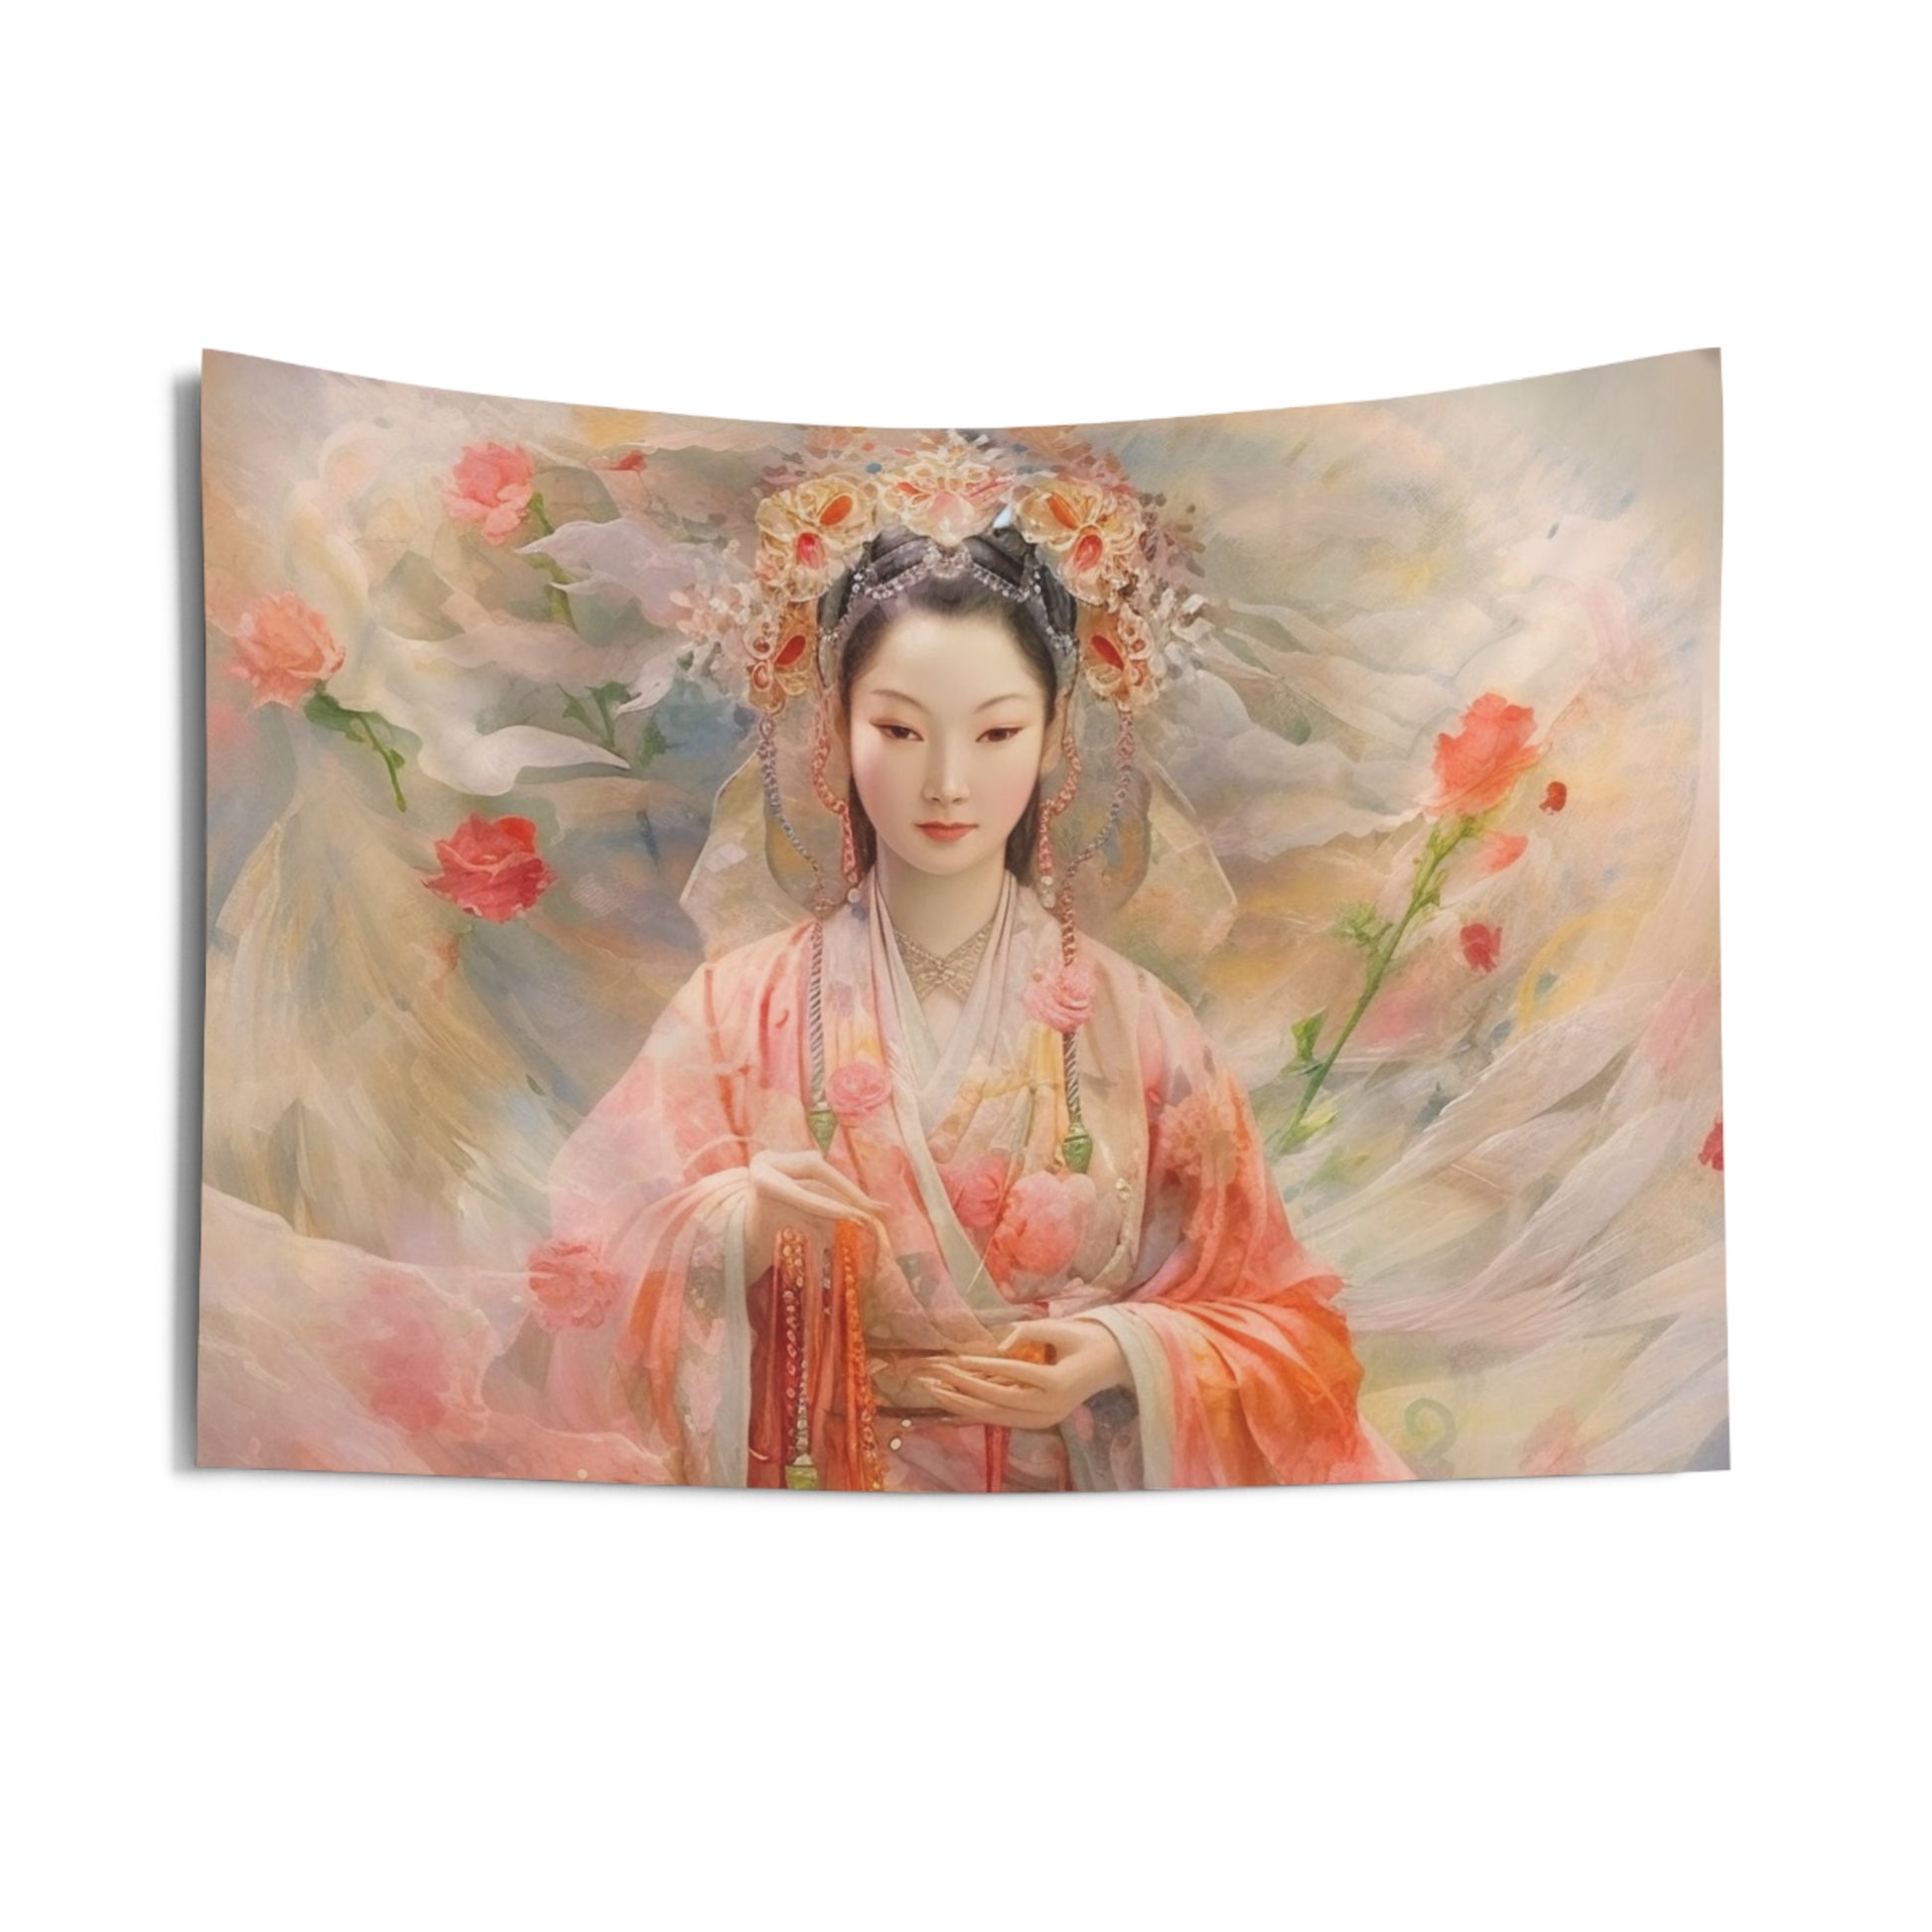 Quan Yin Wall Tapestry - Guan Yin, Kwan Yin, Goddess of Compassion - Spiritual Wall Decor for Buddhism Home Decor 36" × 26"  